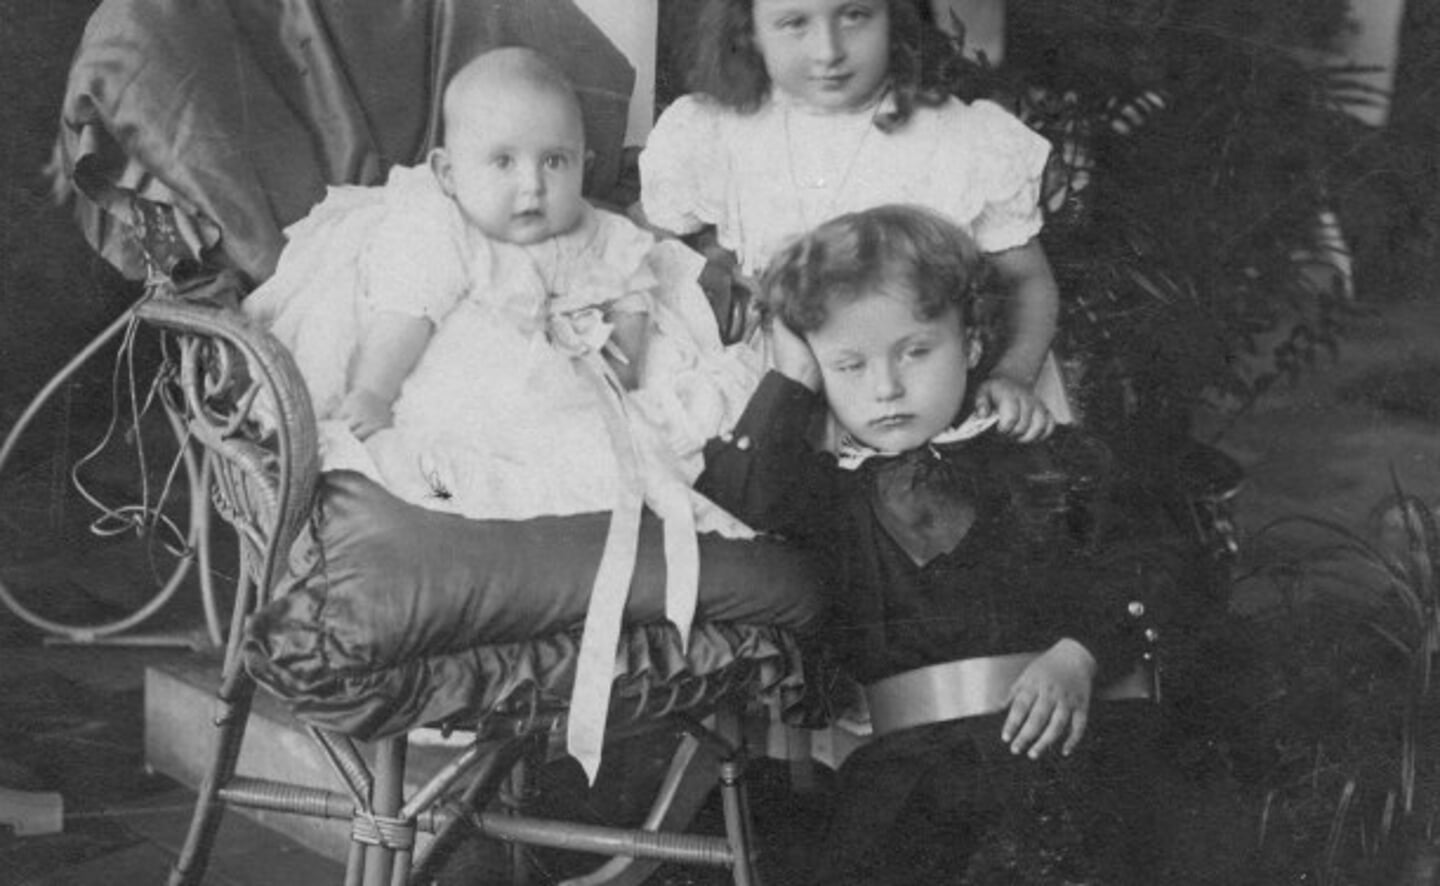 De drie kinderen van Marie-Eugénie de Locht-Mahie uit haar huwelijk met Louis de Locht: staande Jeanne (geb. 1904) en vóór haar Marius (geb. 1906), en zittend in stoel Charles (geb. 1908).